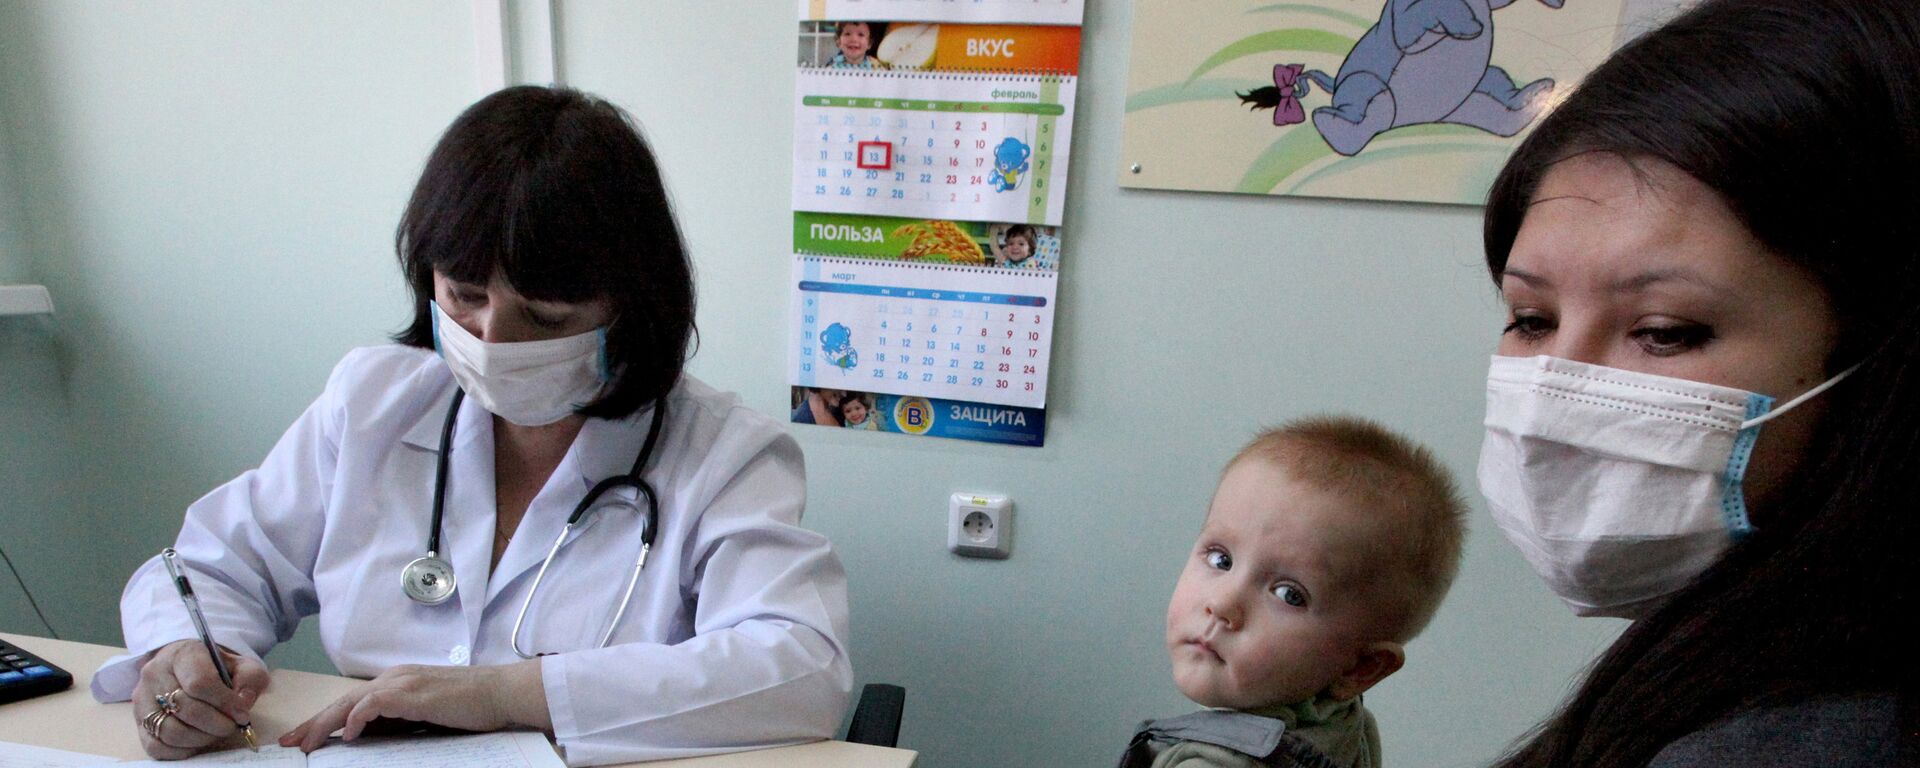 Հայաստանում շրջանառվում է A H3N2 տեսակի գրիպը, պացիենտների մեծ մասը մինչեւ 18 տարեկան երեխաներ են